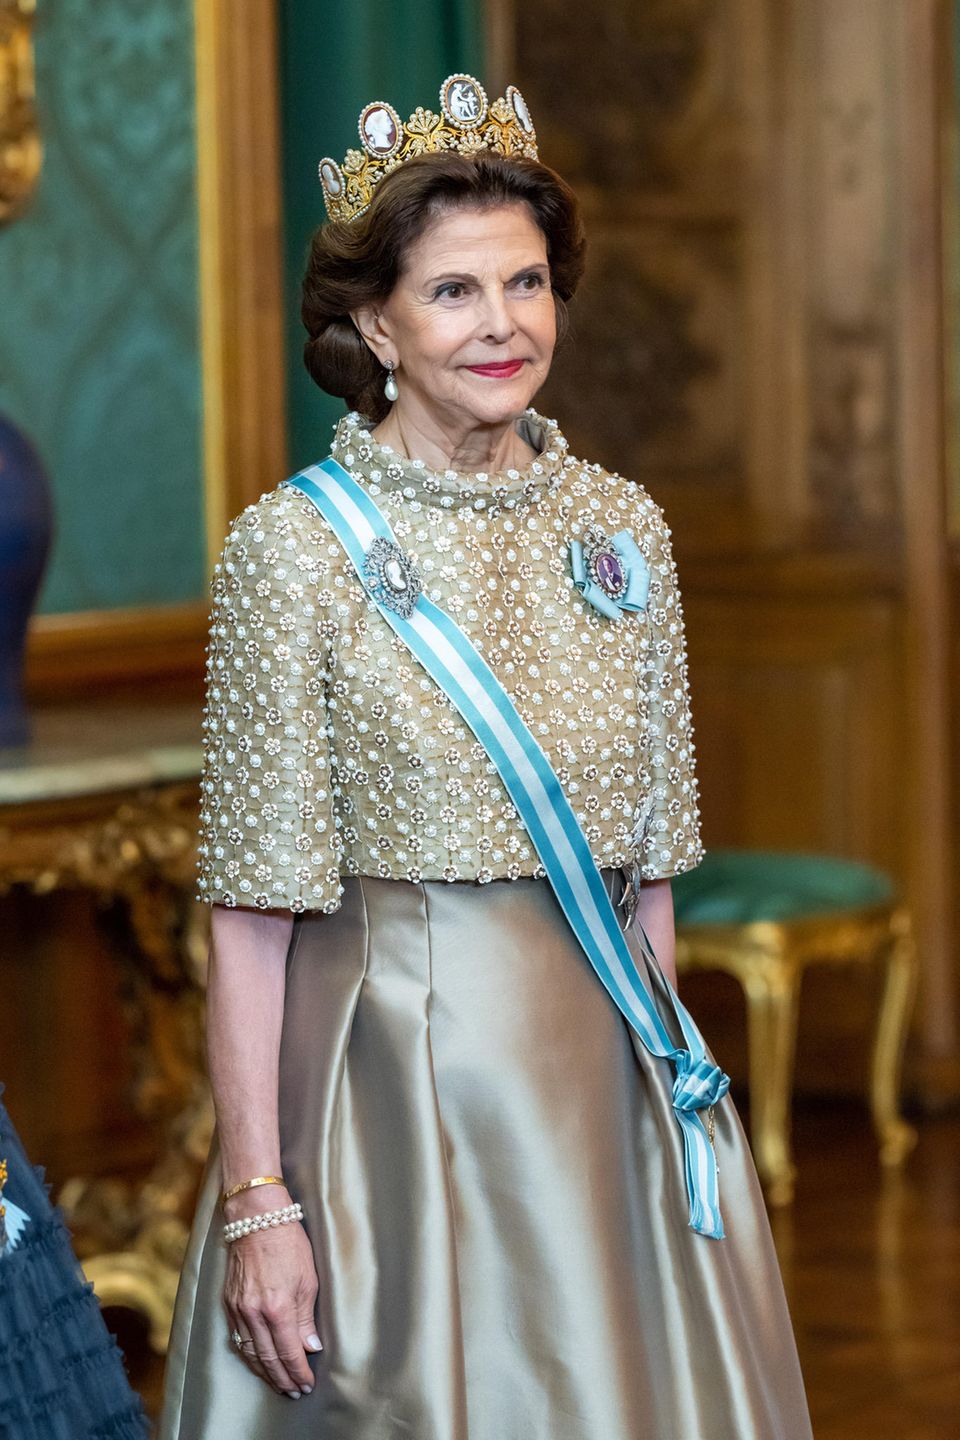 Königin Silvia empfängt ihre Gäste beim Staatsbankett.